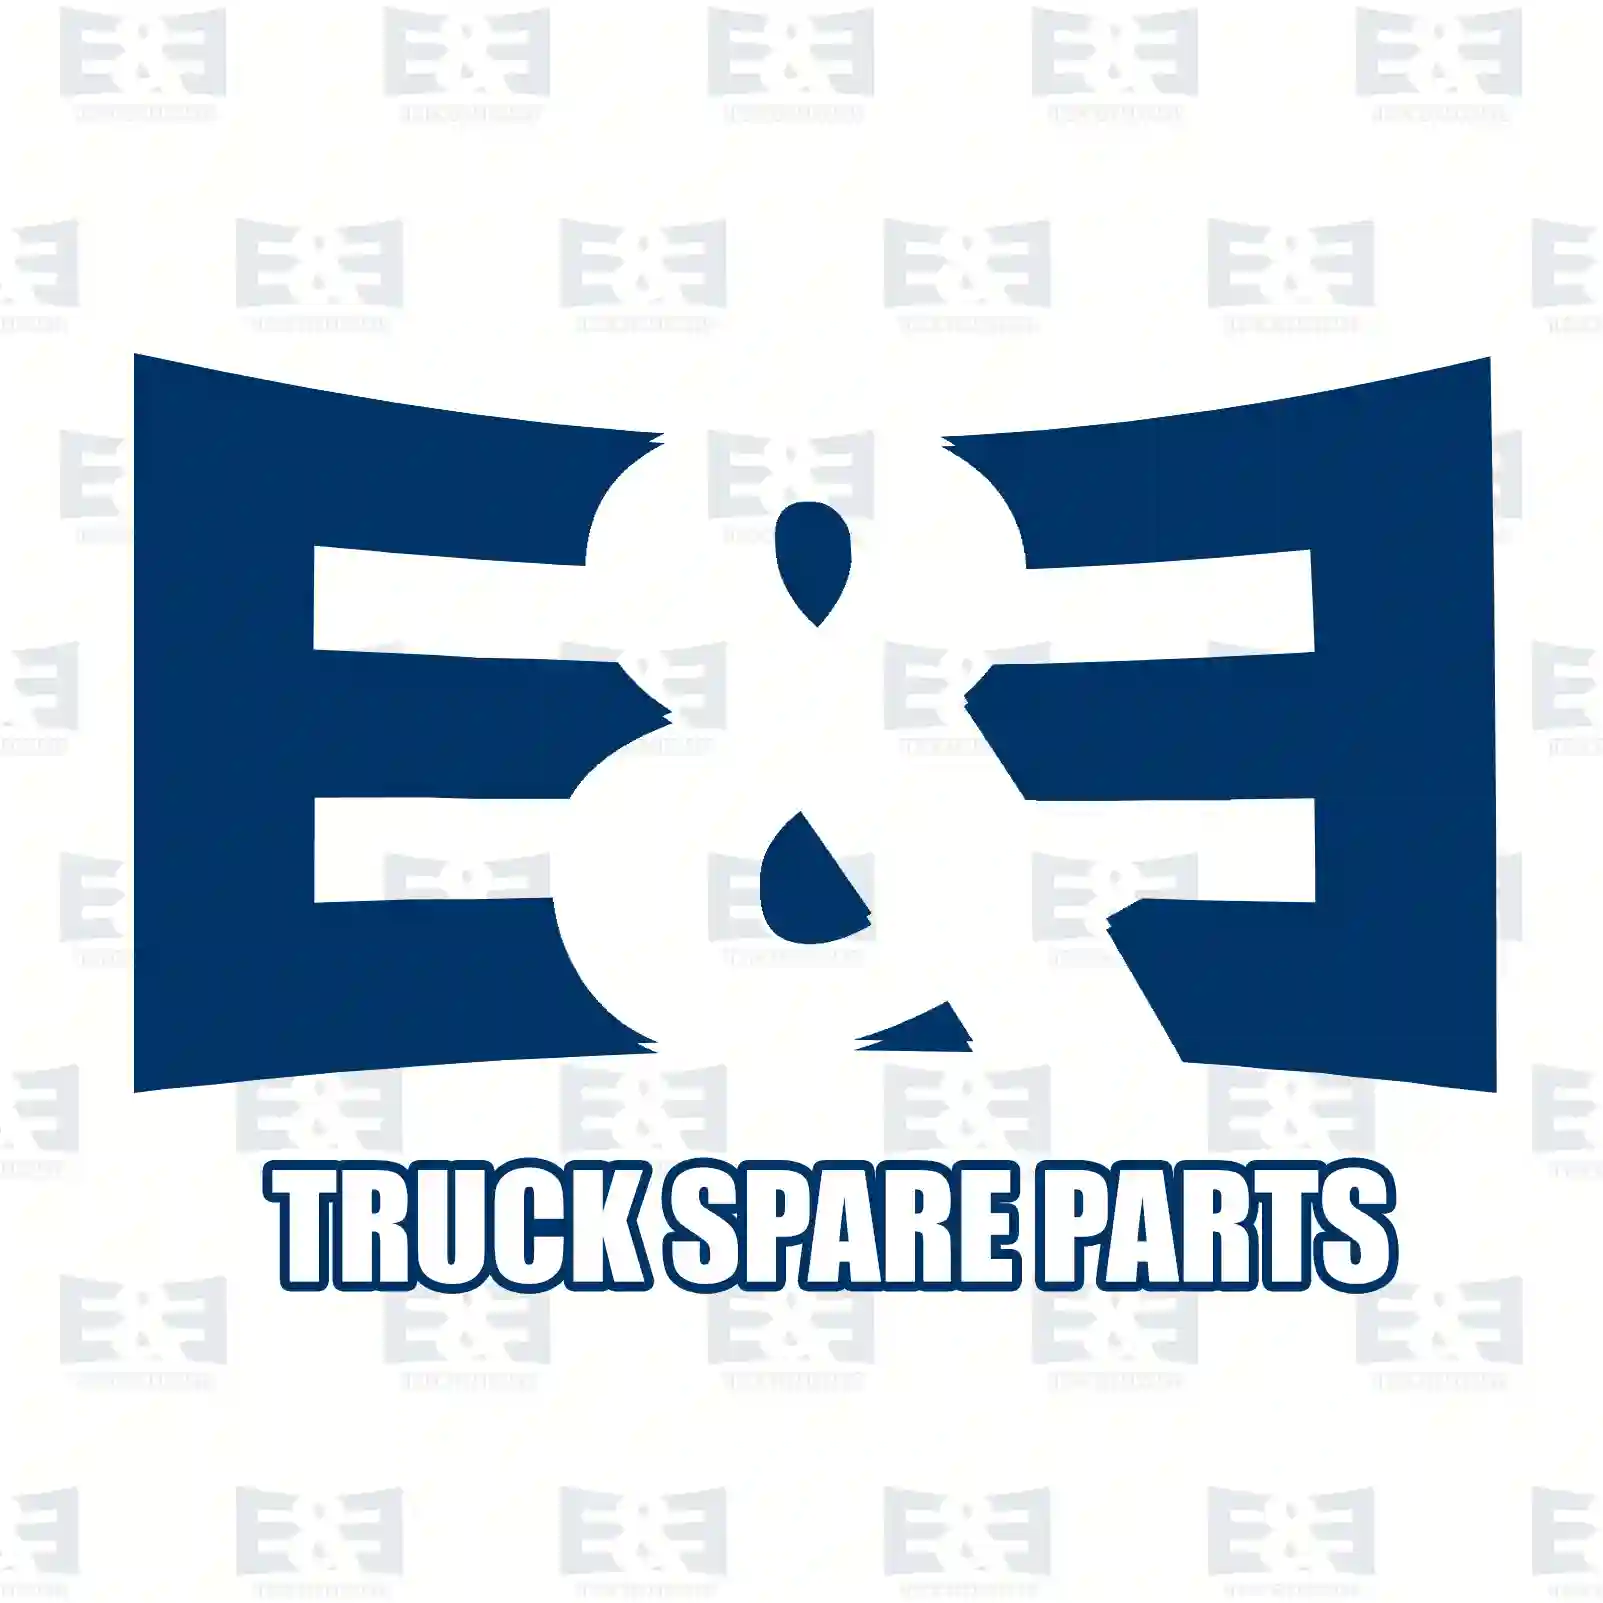 Brake disc, 2E2296281, 1371393, 1503287, 1546747, 6C11-1125-A1B, 6C11-1125-AA, 6C11-1125-AB, , , , ||  2E2296281 E&E Truck Spare Parts | Truck Spare Parts, Auotomotive Spare Parts Brake disc, 2E2296281, 1371393, 1503287, 1546747, 6C11-1125-A1B, 6C11-1125-AA, 6C11-1125-AB, , , , ||  2E2296281 E&E Truck Spare Parts | Truck Spare Parts, Auotomotive Spare Parts